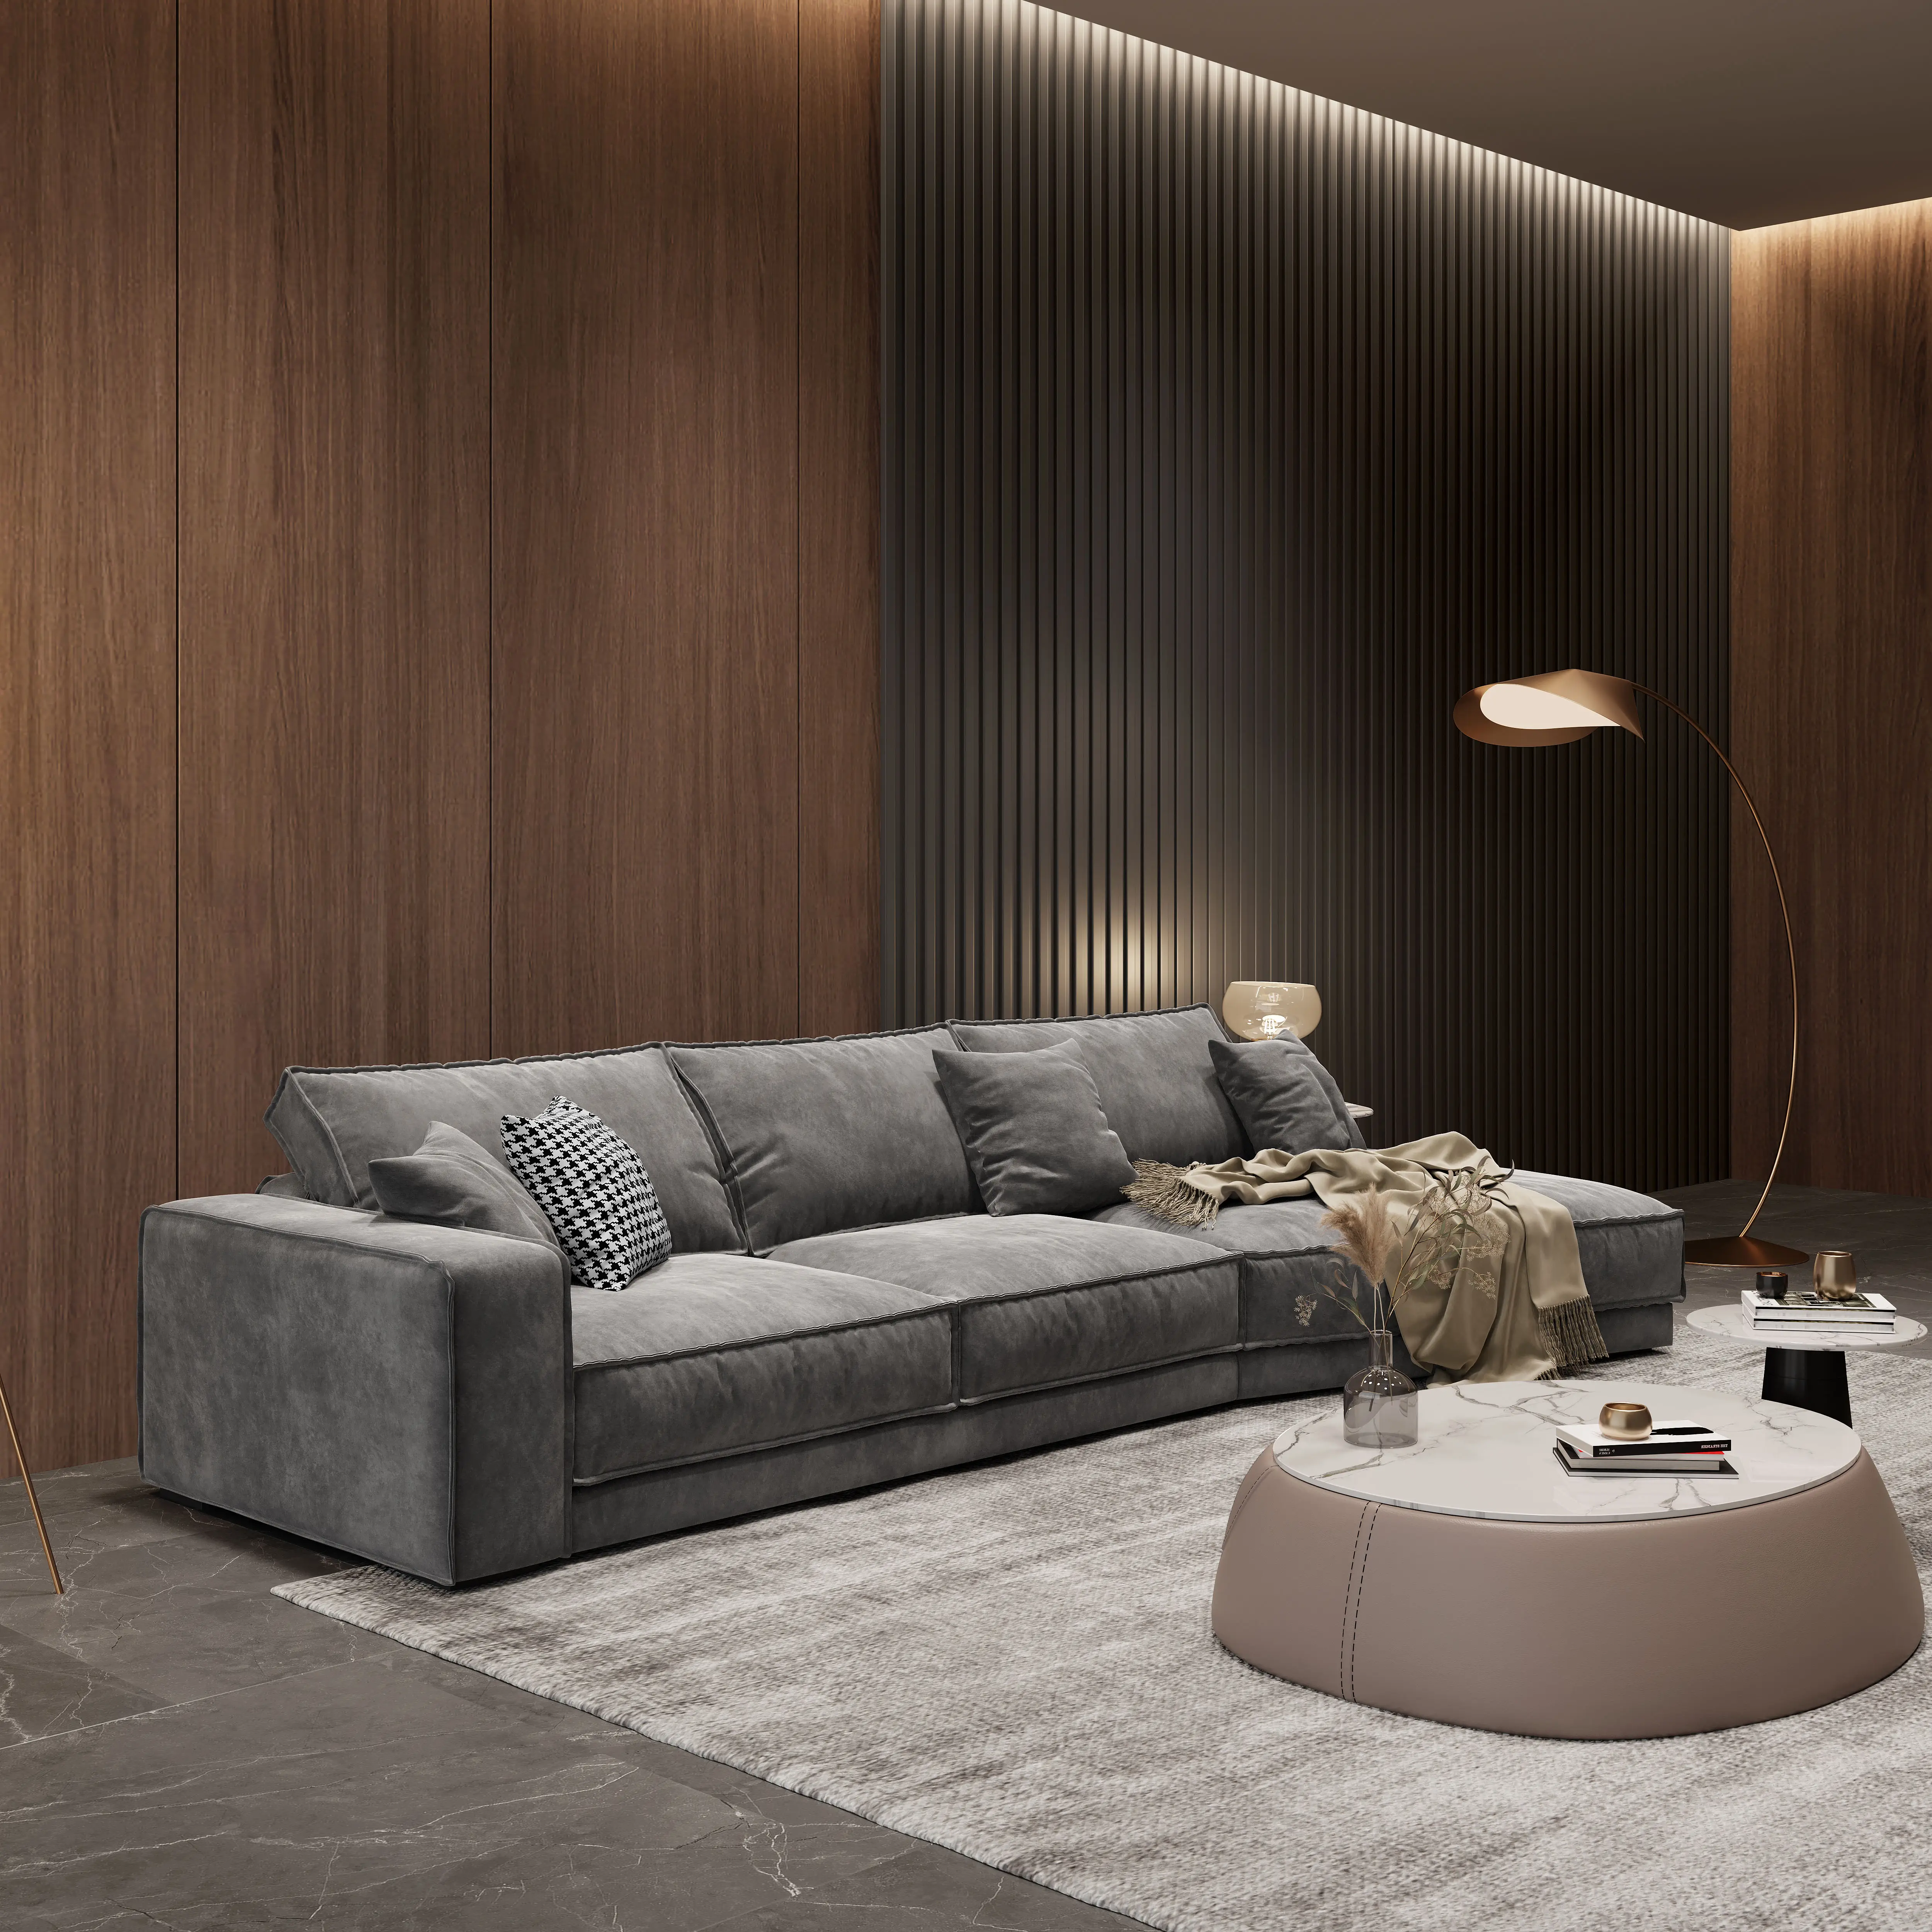 新しい高級ロガーオープンデザインL字型イタリア断面リネンソファセットコレクション家具